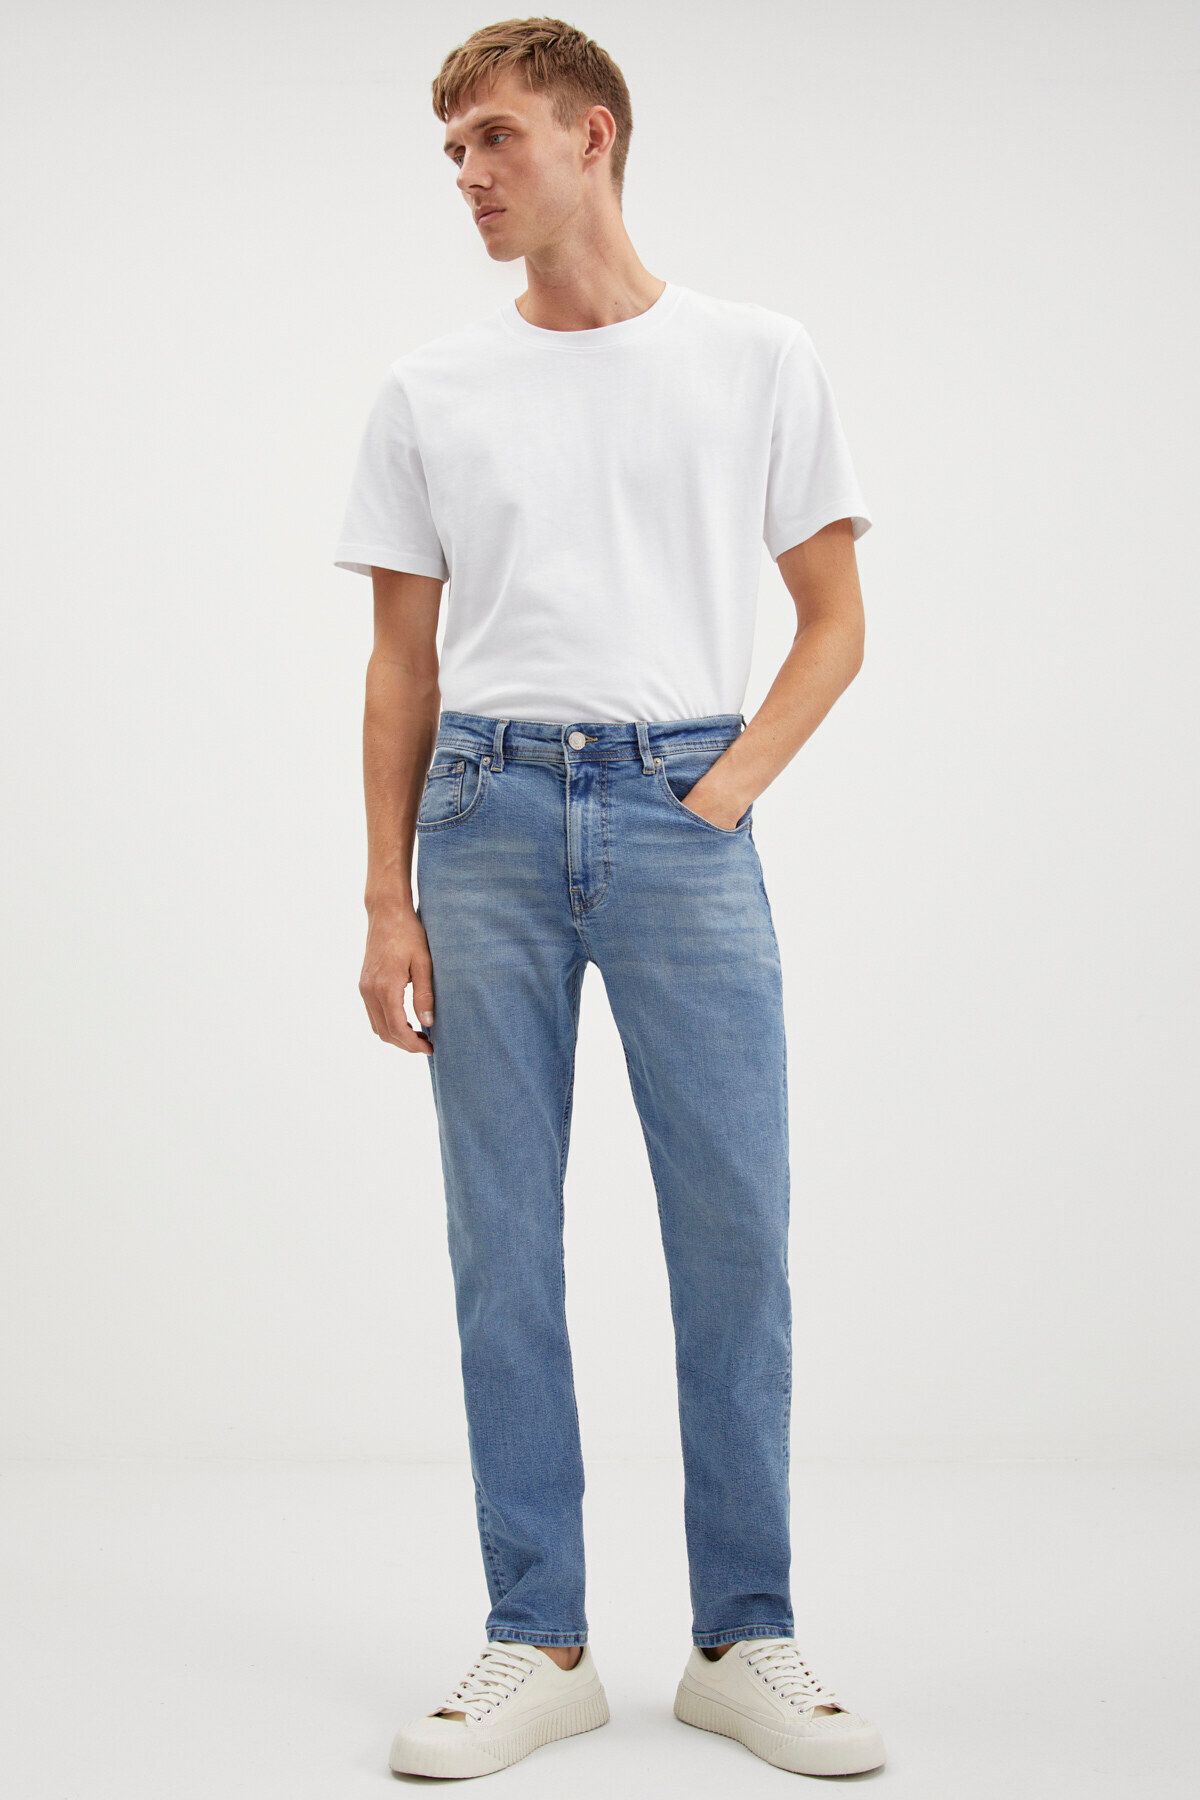 GRIMELANGE Davın Erkek Denim Kalın Dokulu Slim Fit Kalıplı Açık Mavi Jeans